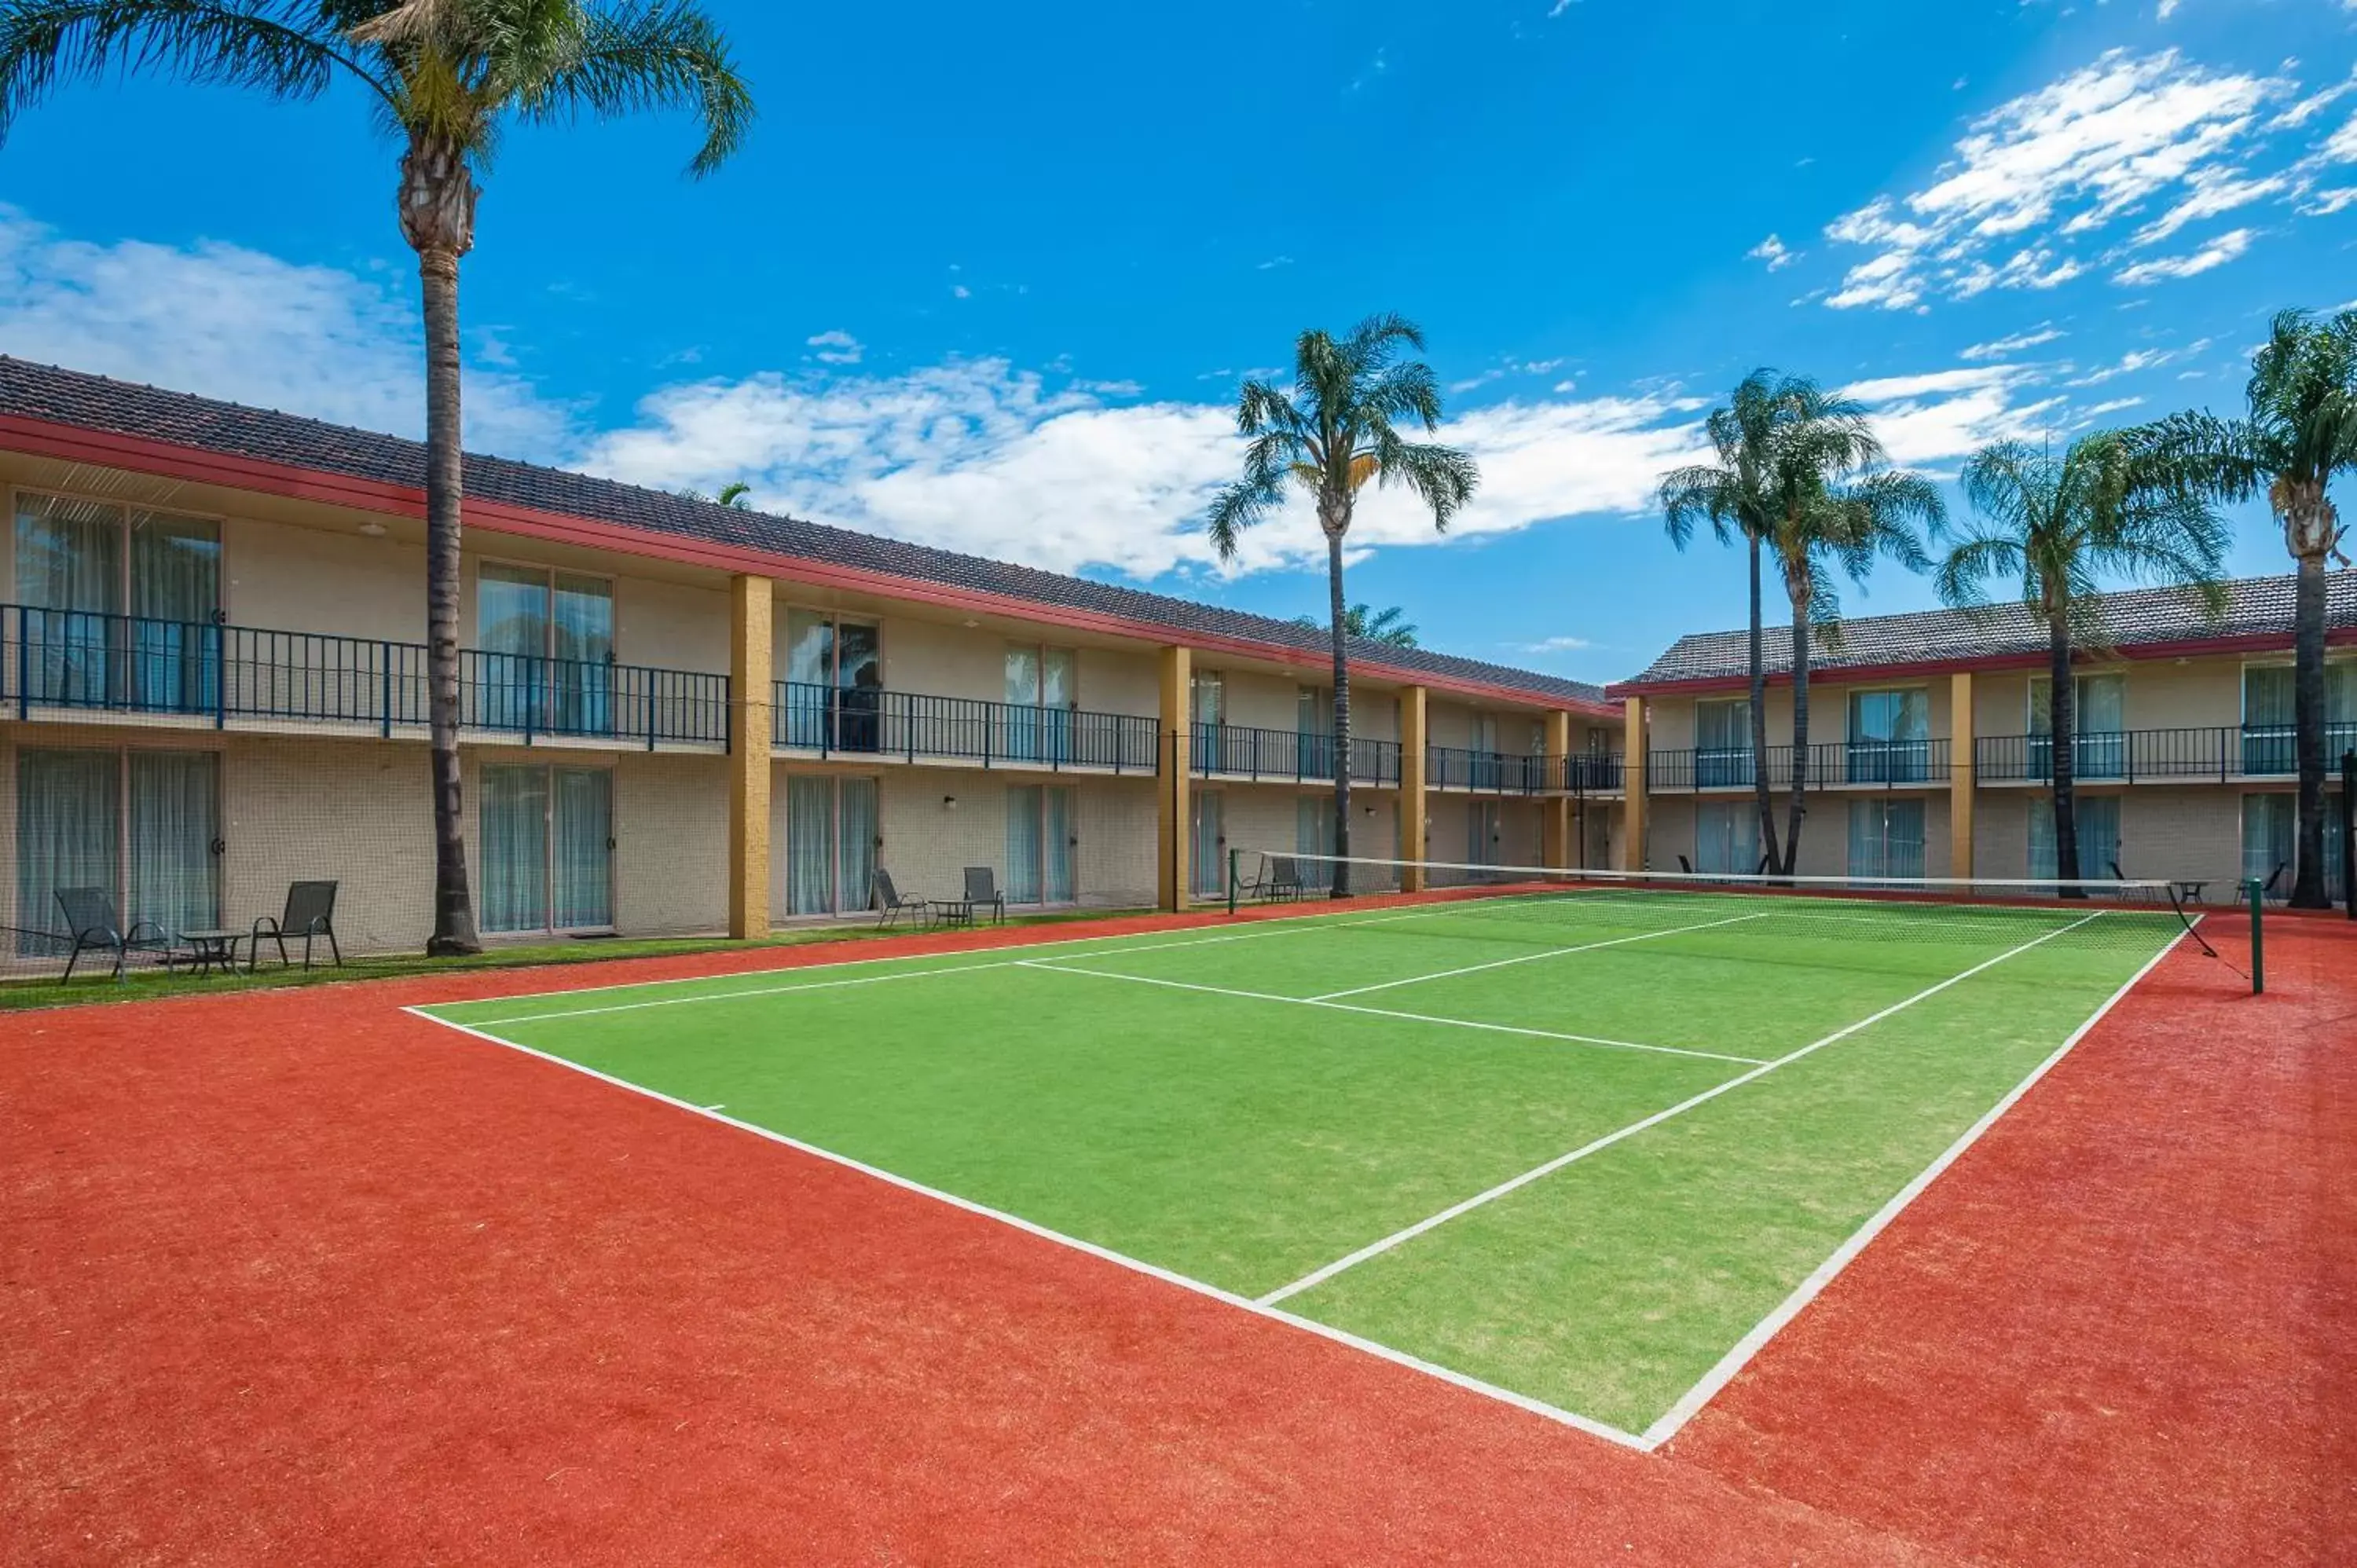 Tennis court, Property Building in Mildura Inlander Resort